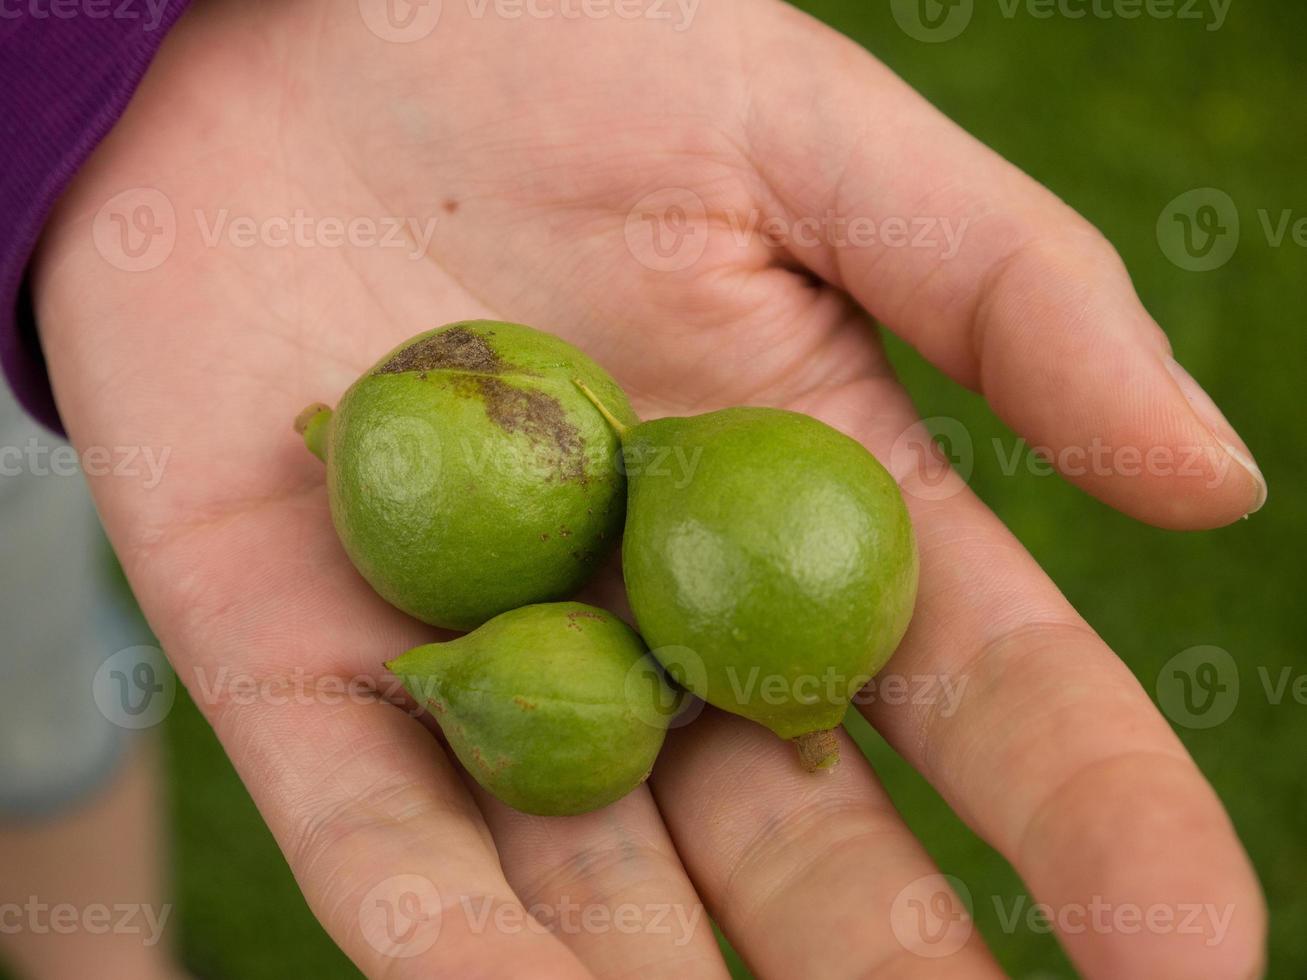 Nueces de macadamia foto